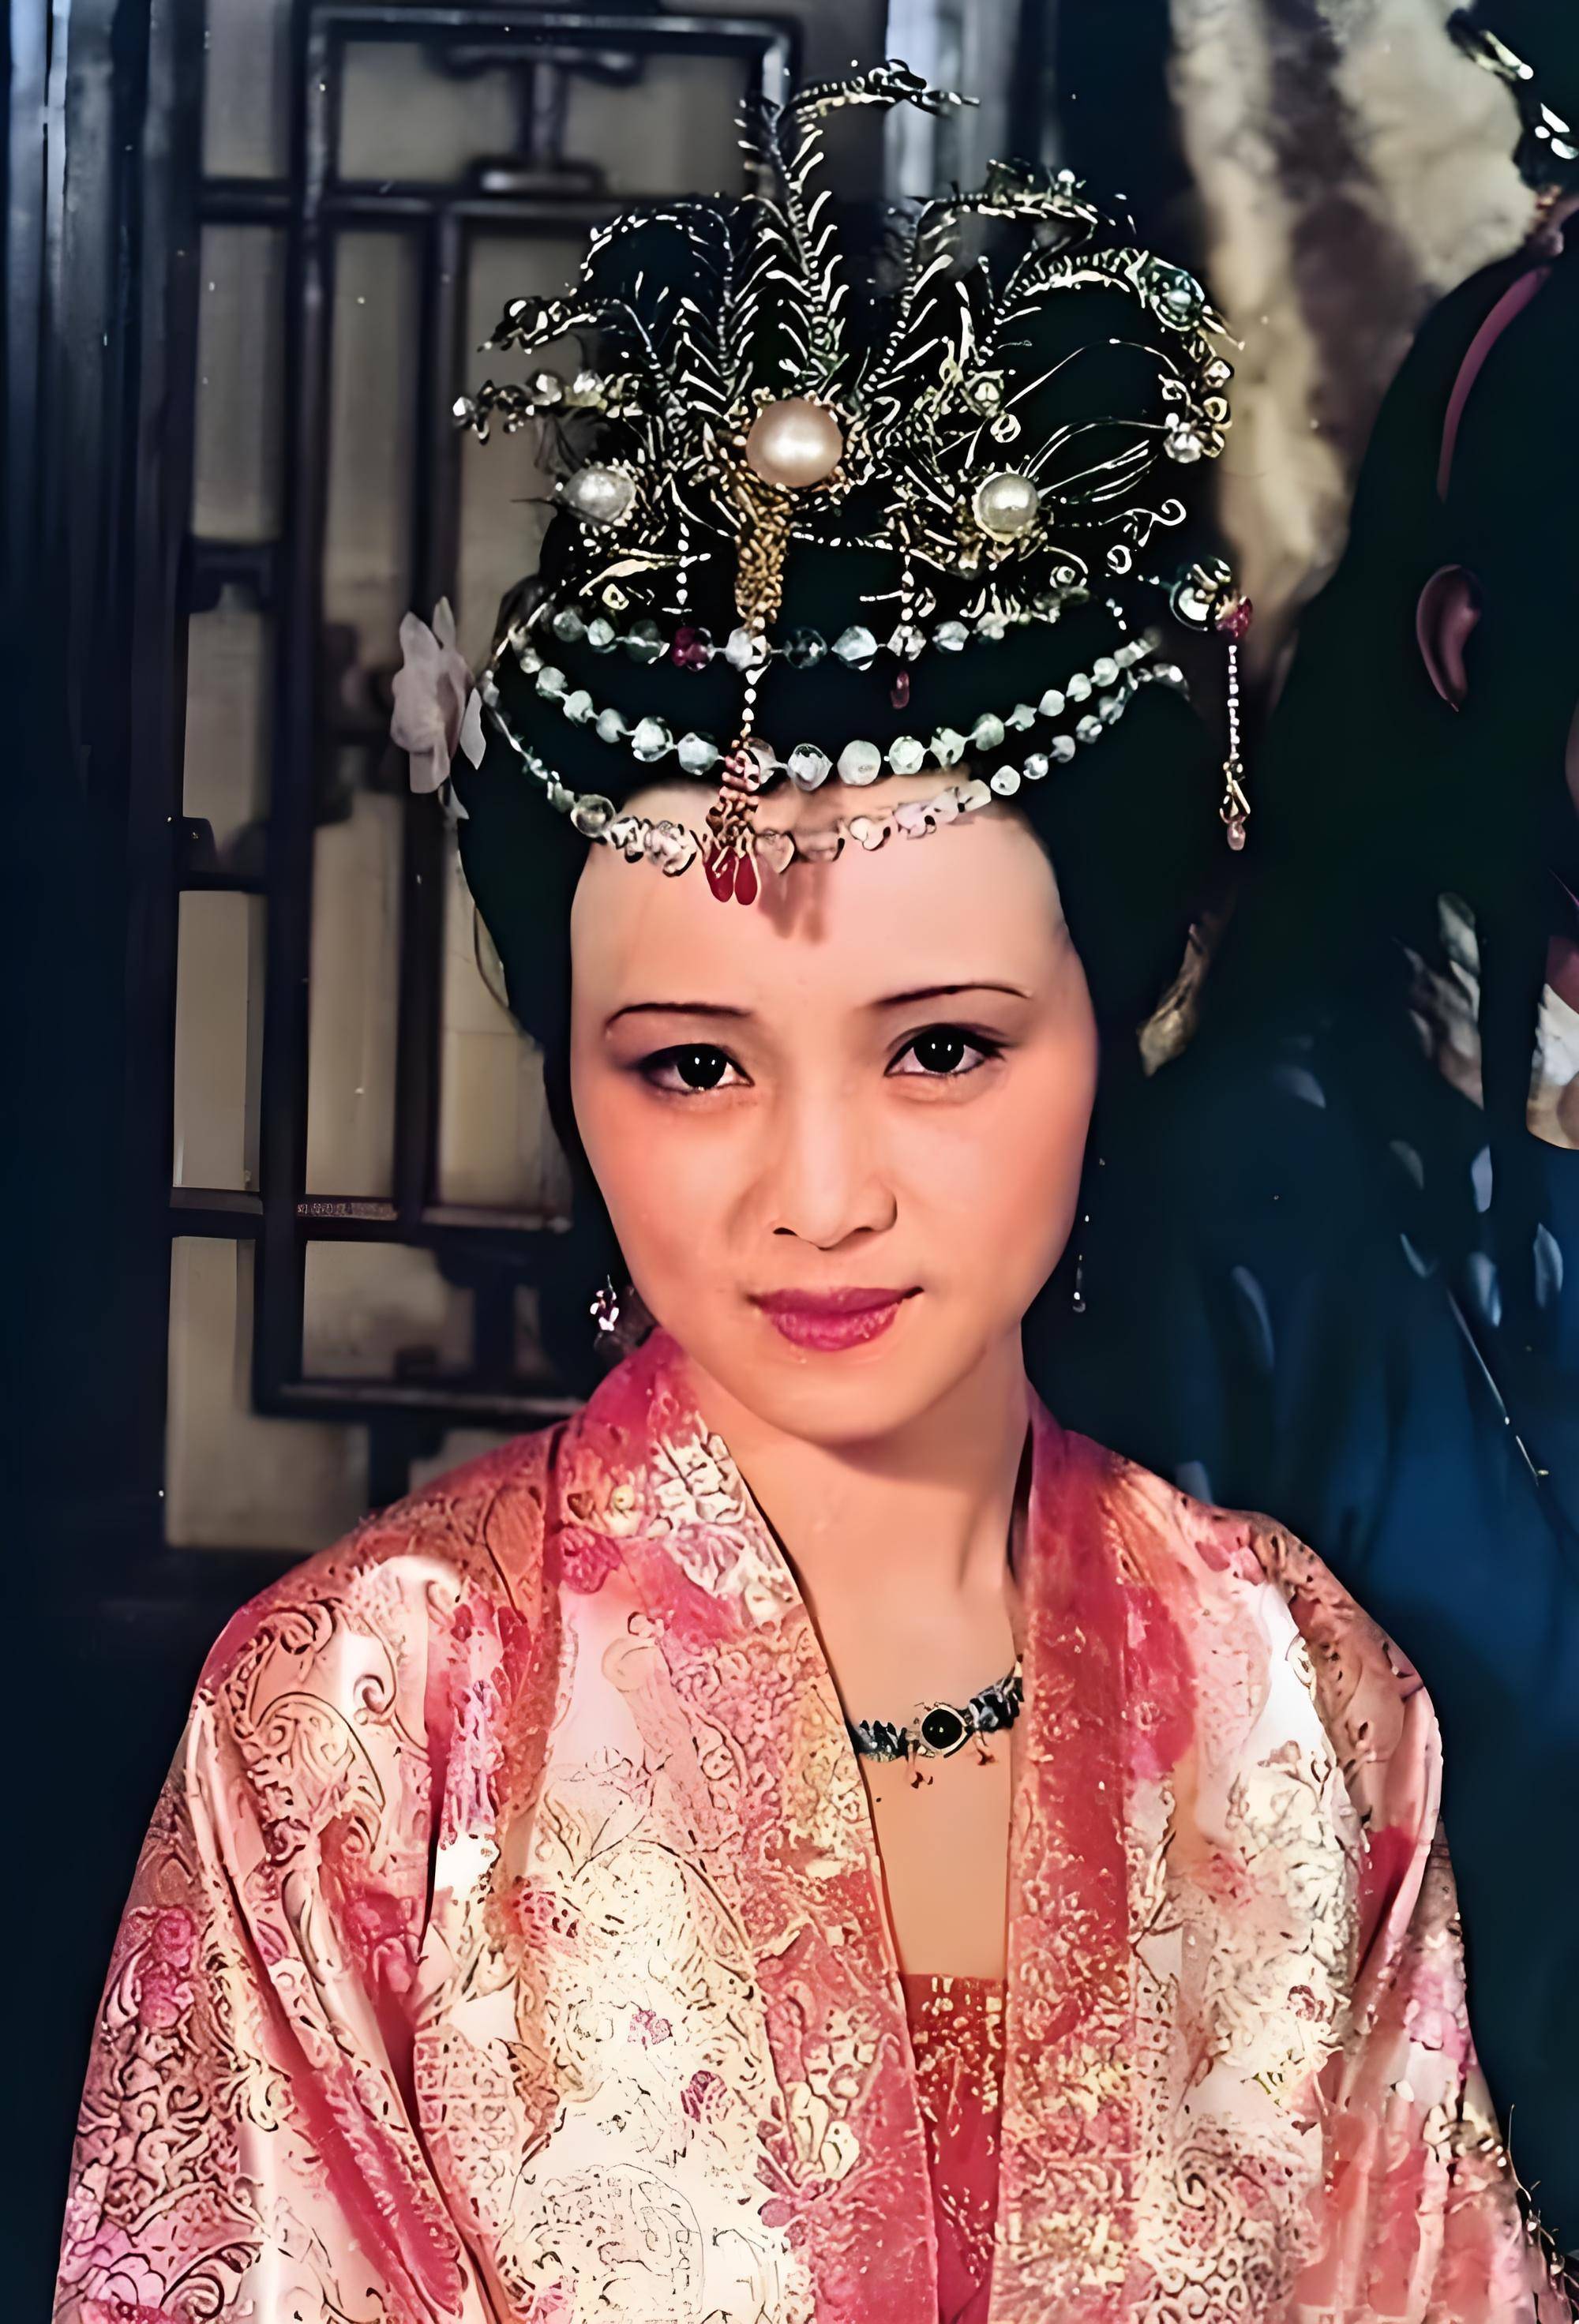 87版的《红楼梦》中,同样是饰演的秦可卿,张蕾就为大众演绎了一个逼真